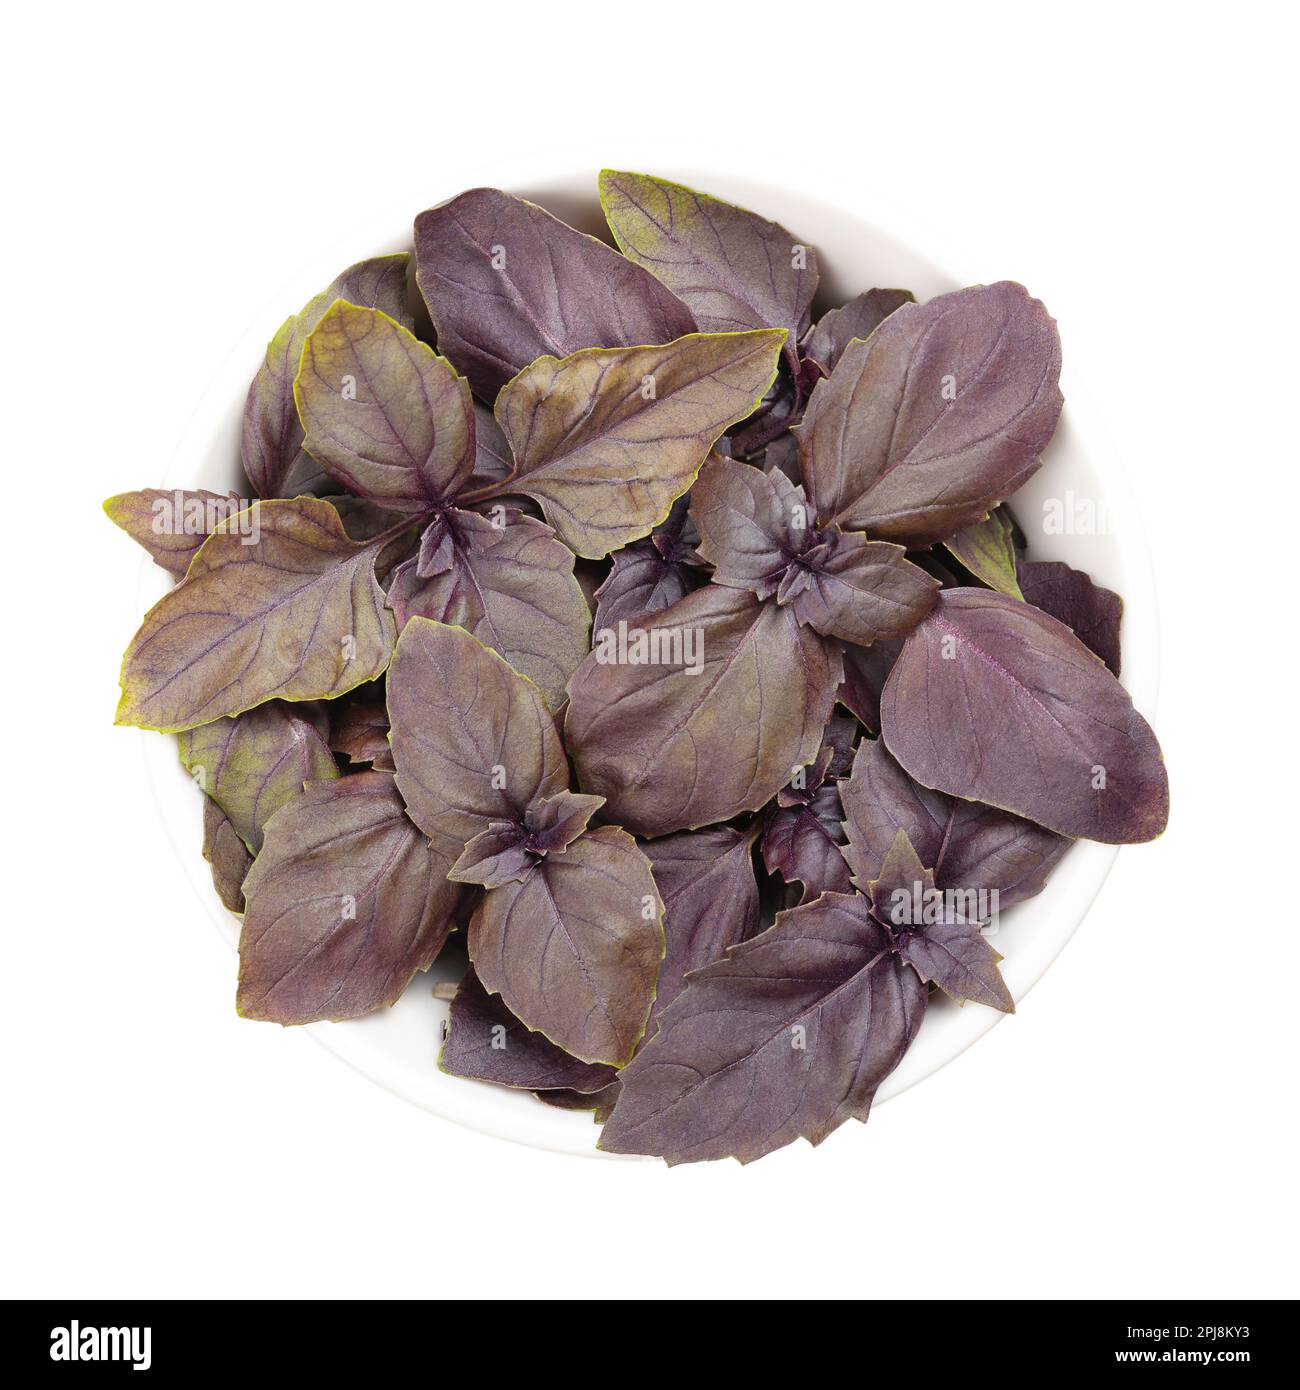 Basilico rosso, foglie fresche in un recipiente bianco. Purpurascens di Basilico di Ocimum, una variazione del basilico dolce, con le foglie di porpora rossiccio e sapore forte. Foto Stock